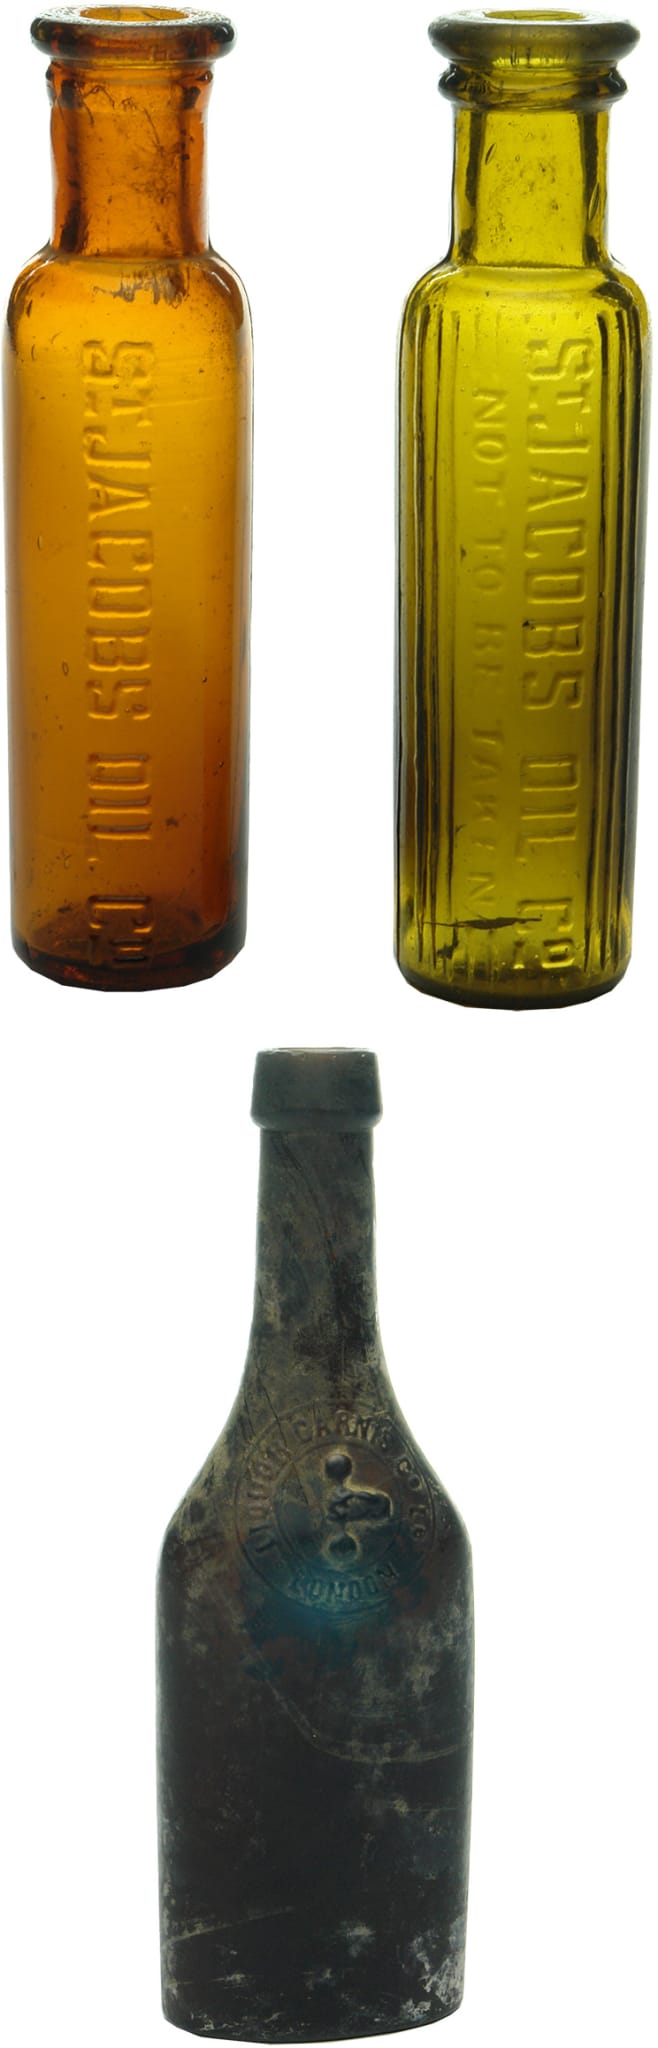 Old Cure Medicine Bottles